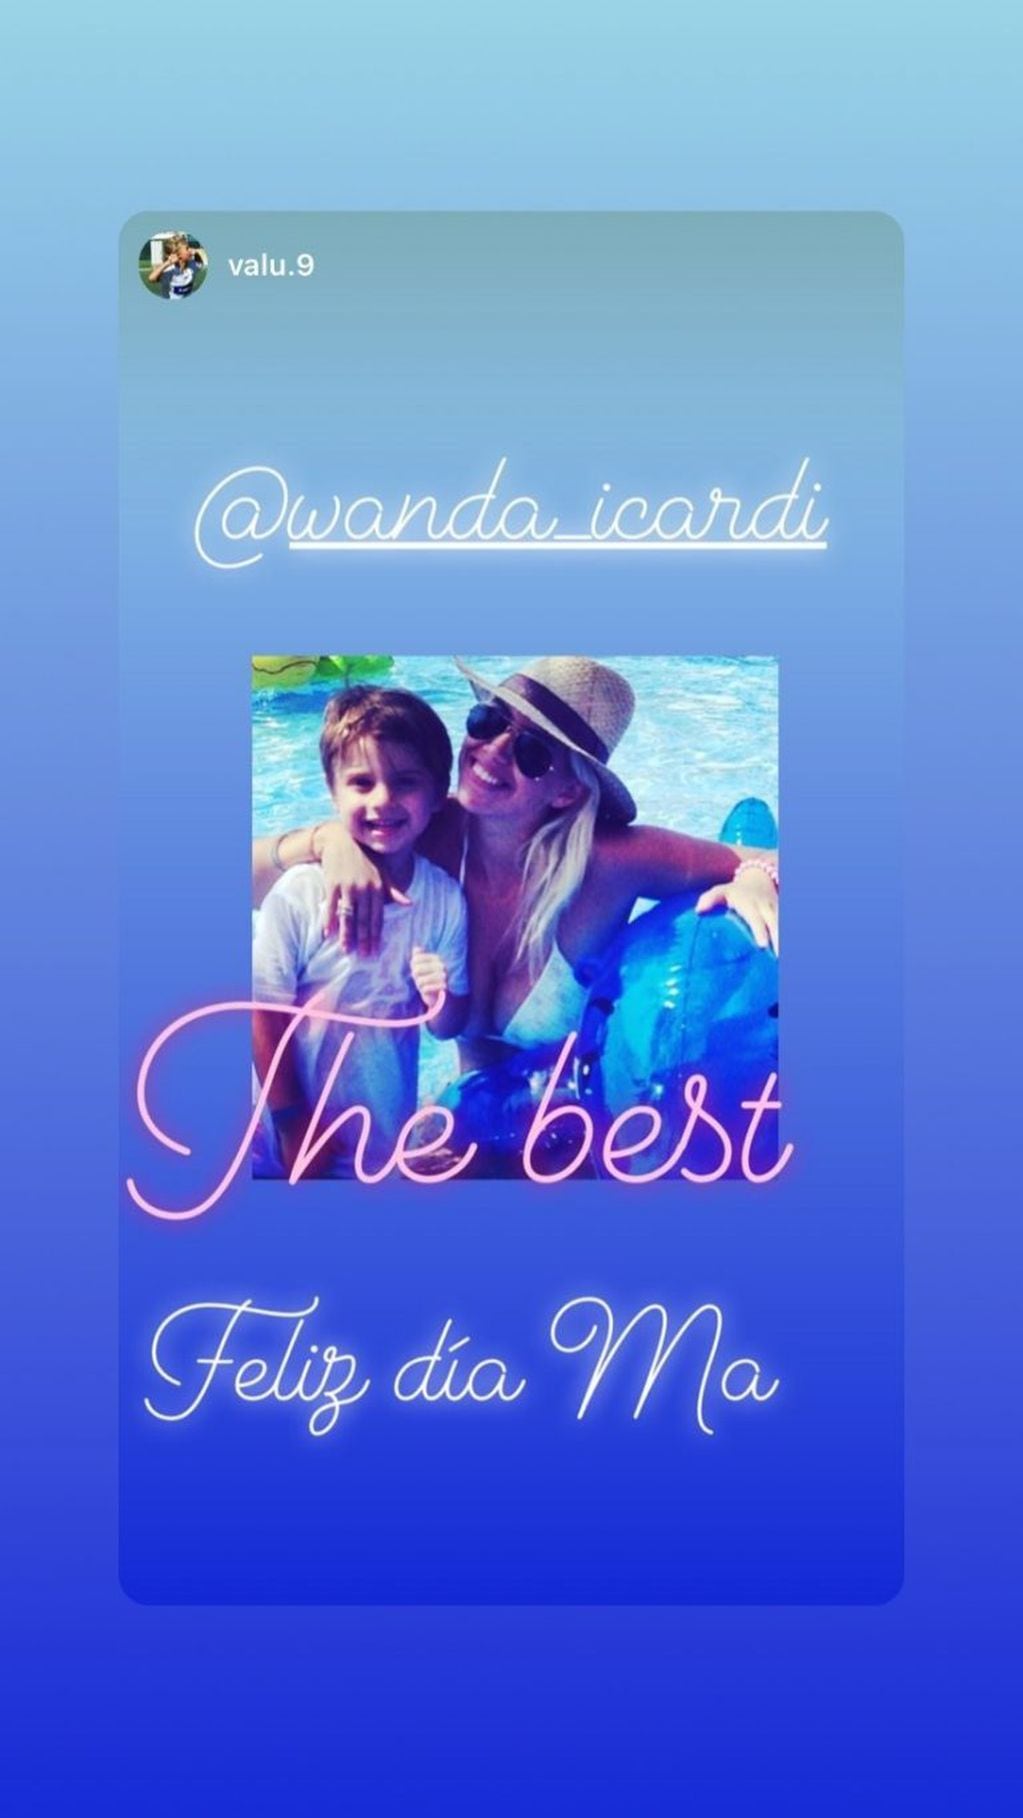 El tierno mensaje de Valentino López a su mamá (Foto: Instagram/ @wanda_icardi)